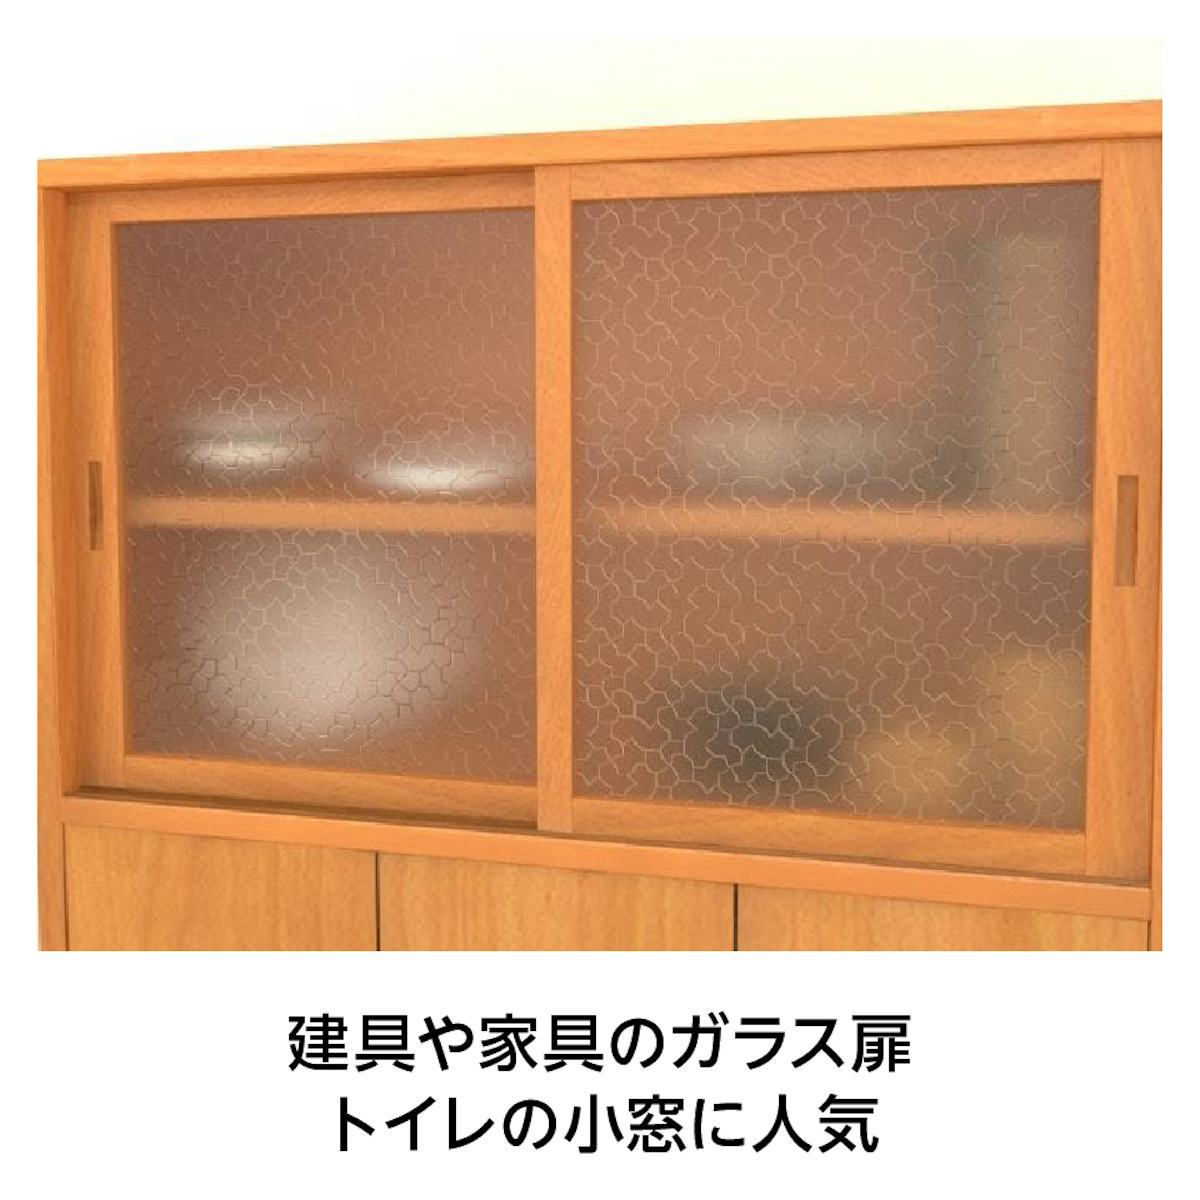 昭和型板ガラス - 細かな凹凸で目隠し効果が高い／建具、家具のガラス扉、トイレの小窓等に